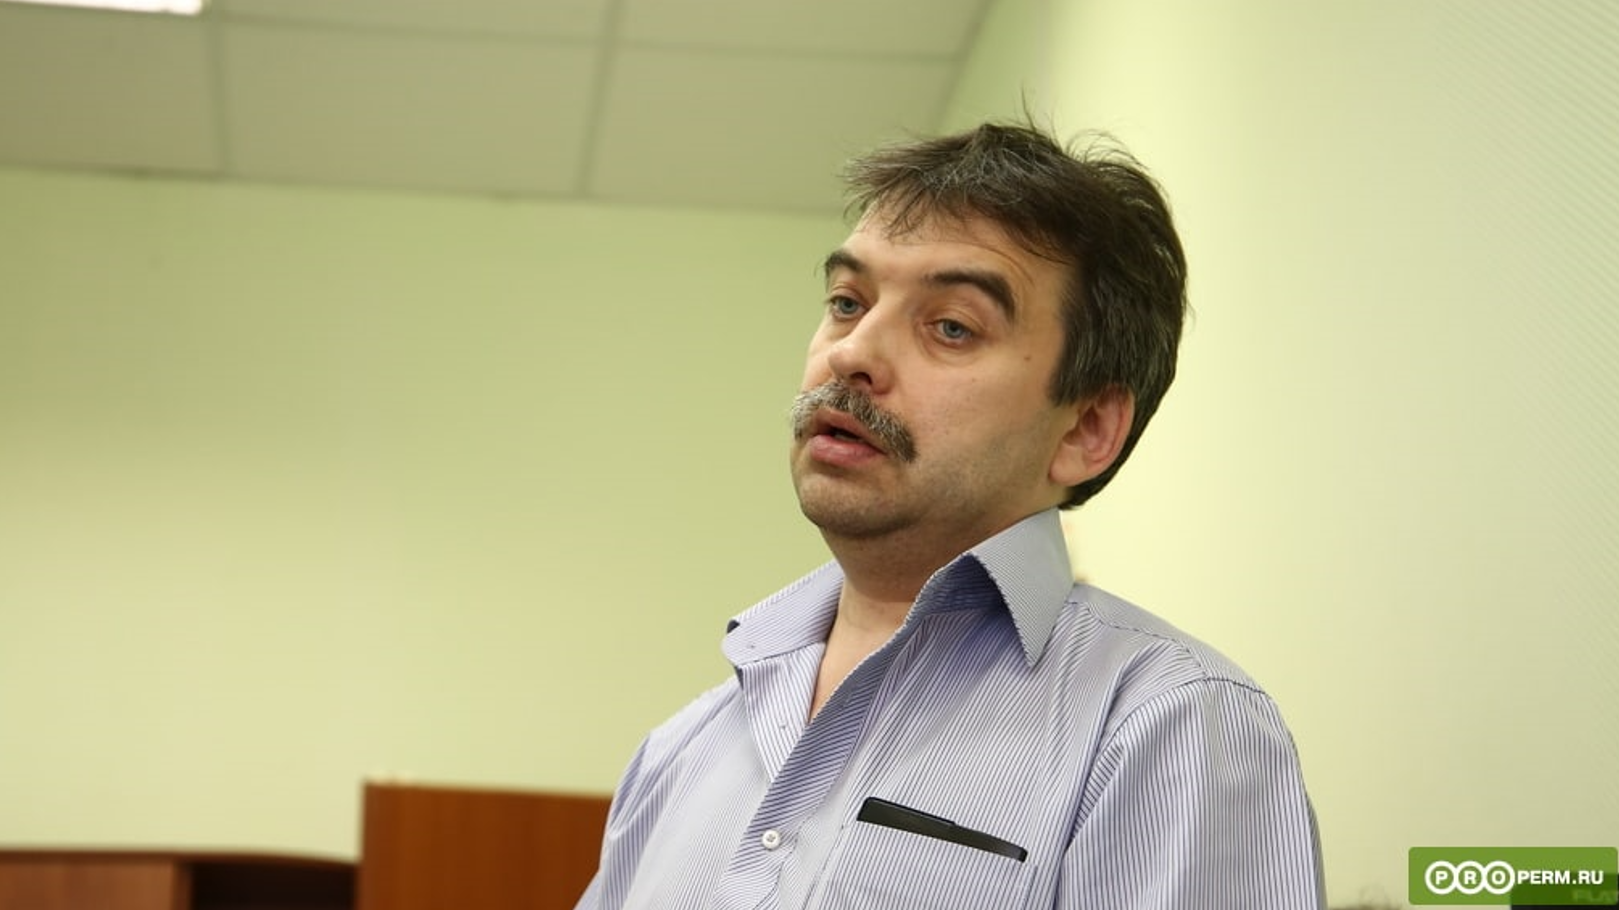 Пермский политолог Виталий Ковин снова стал иноагентом. Теперь якобы за деятельность в пользу Украины